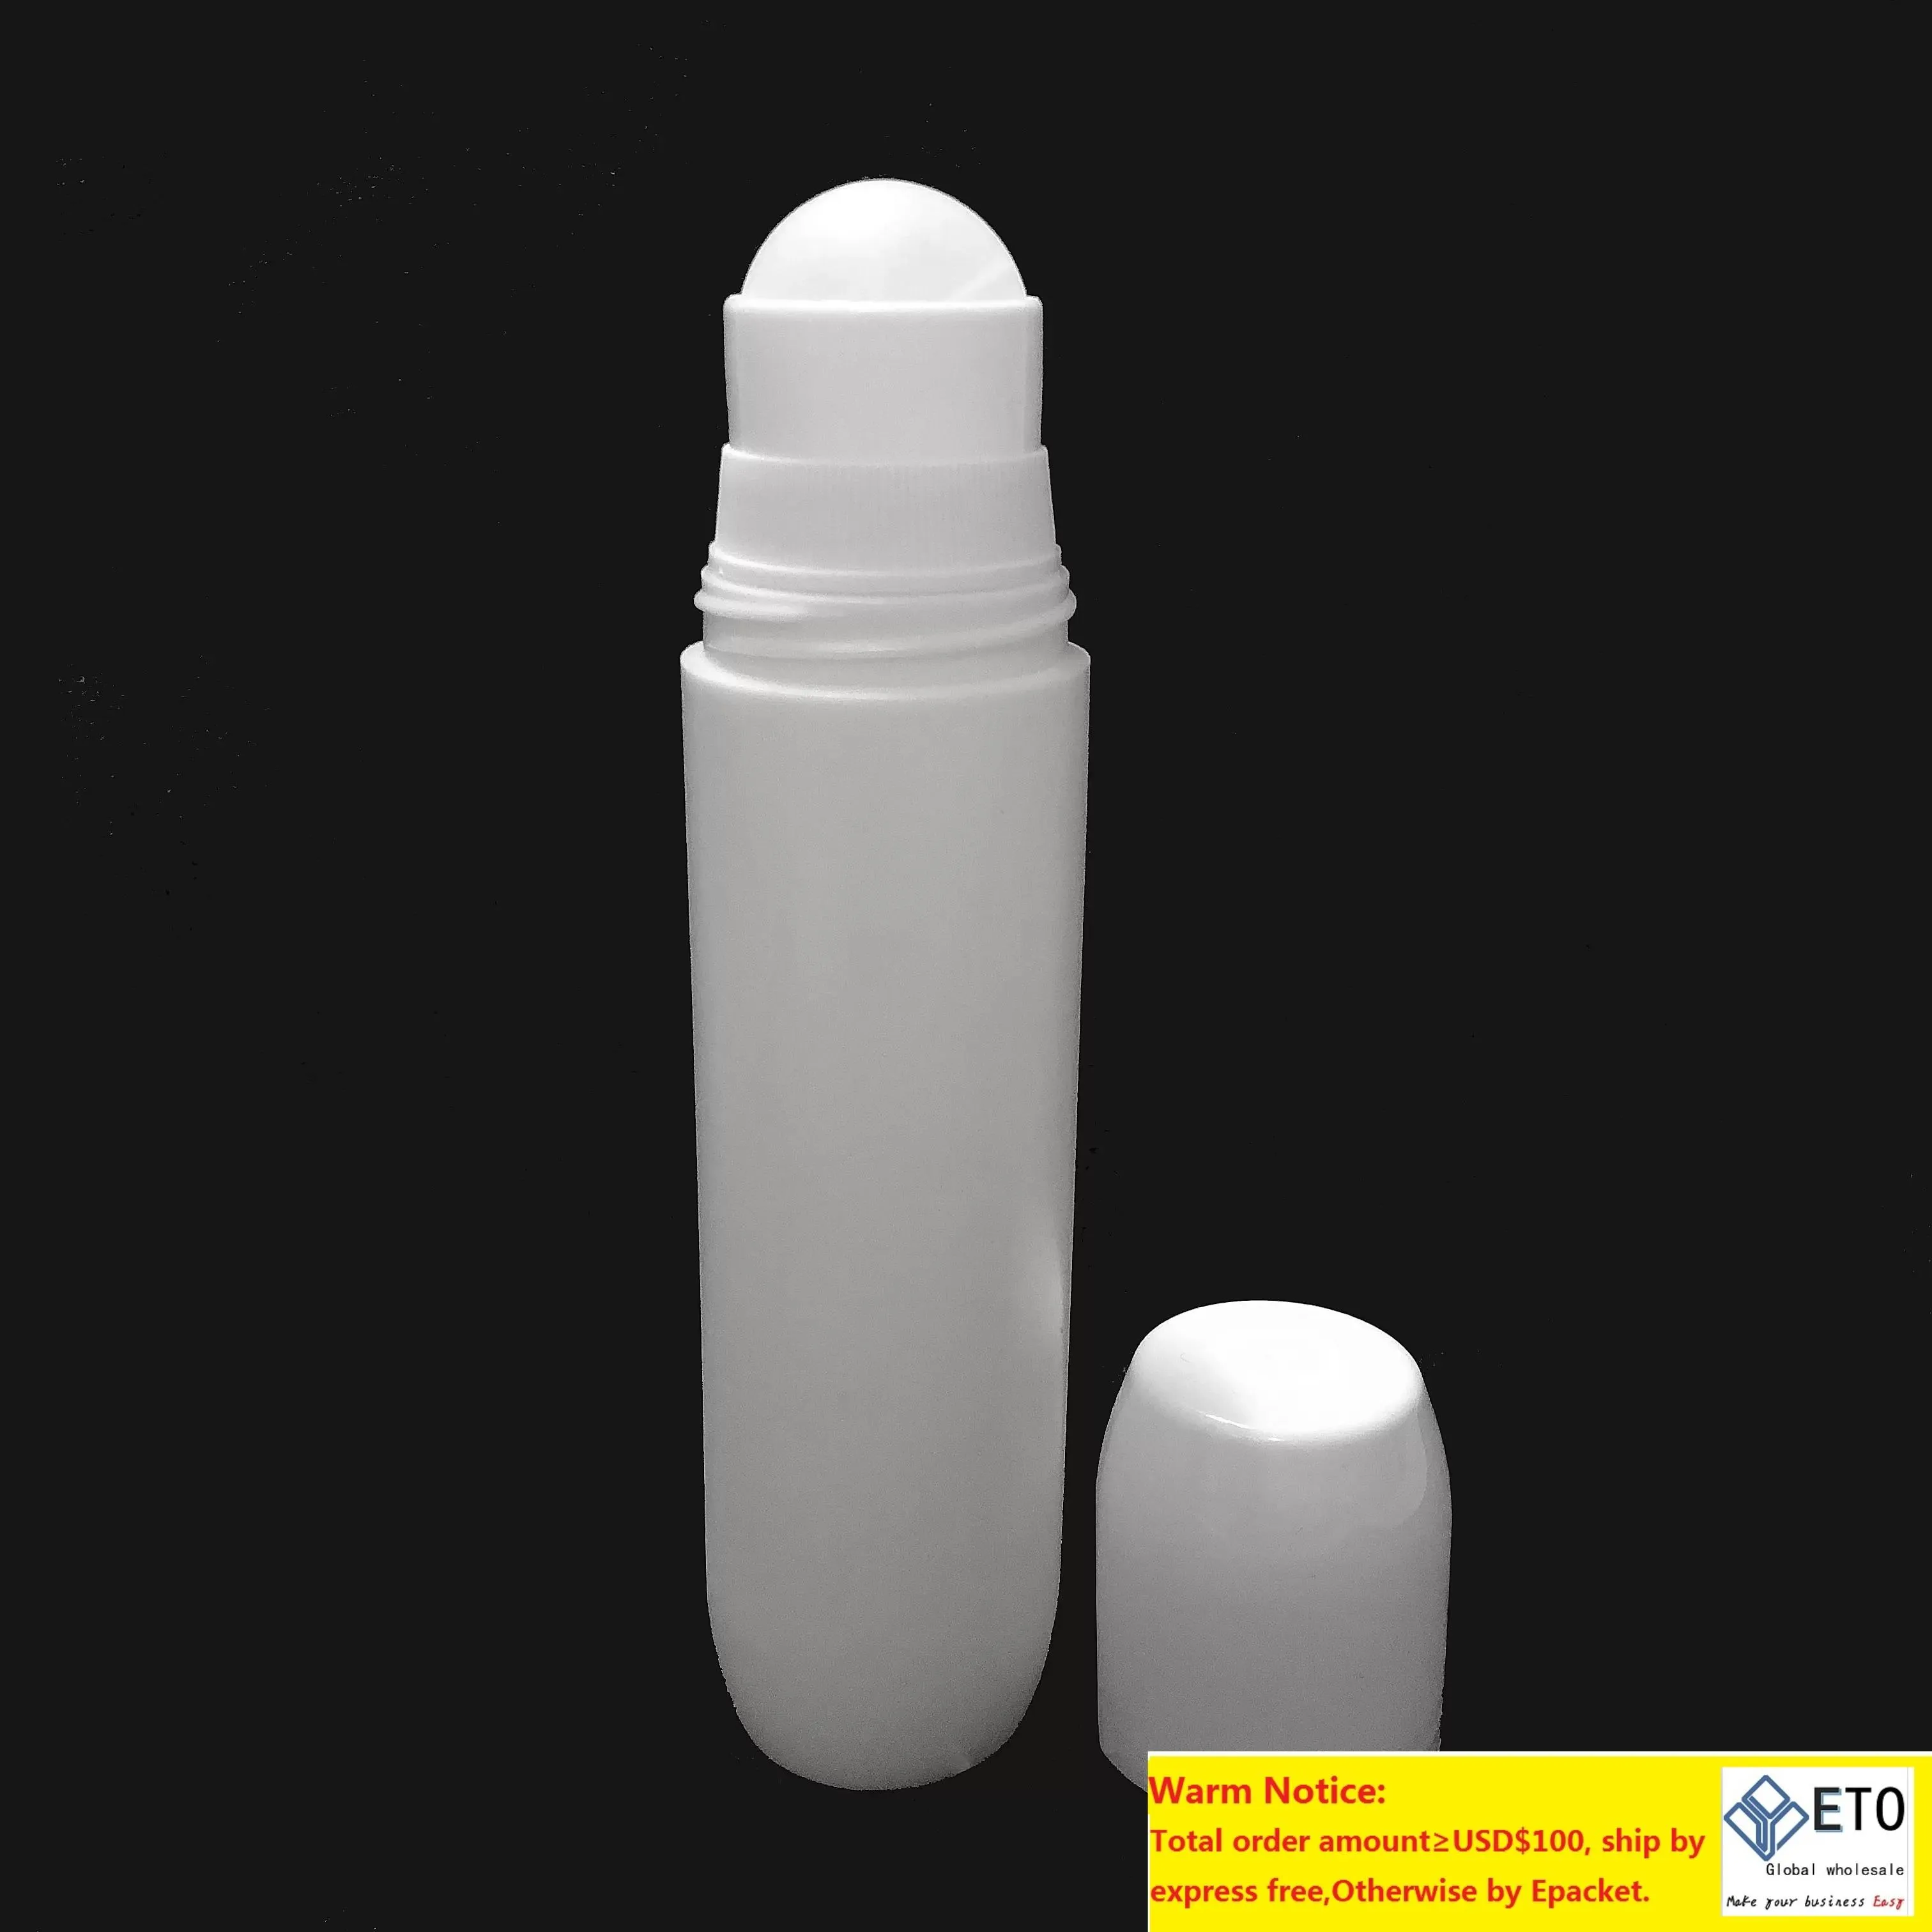 100ml White Plastic Roller Bottles Deodorant Bottles White Empty Refillable Roll On Bottles for Essential Oils Perfume Cosmetics